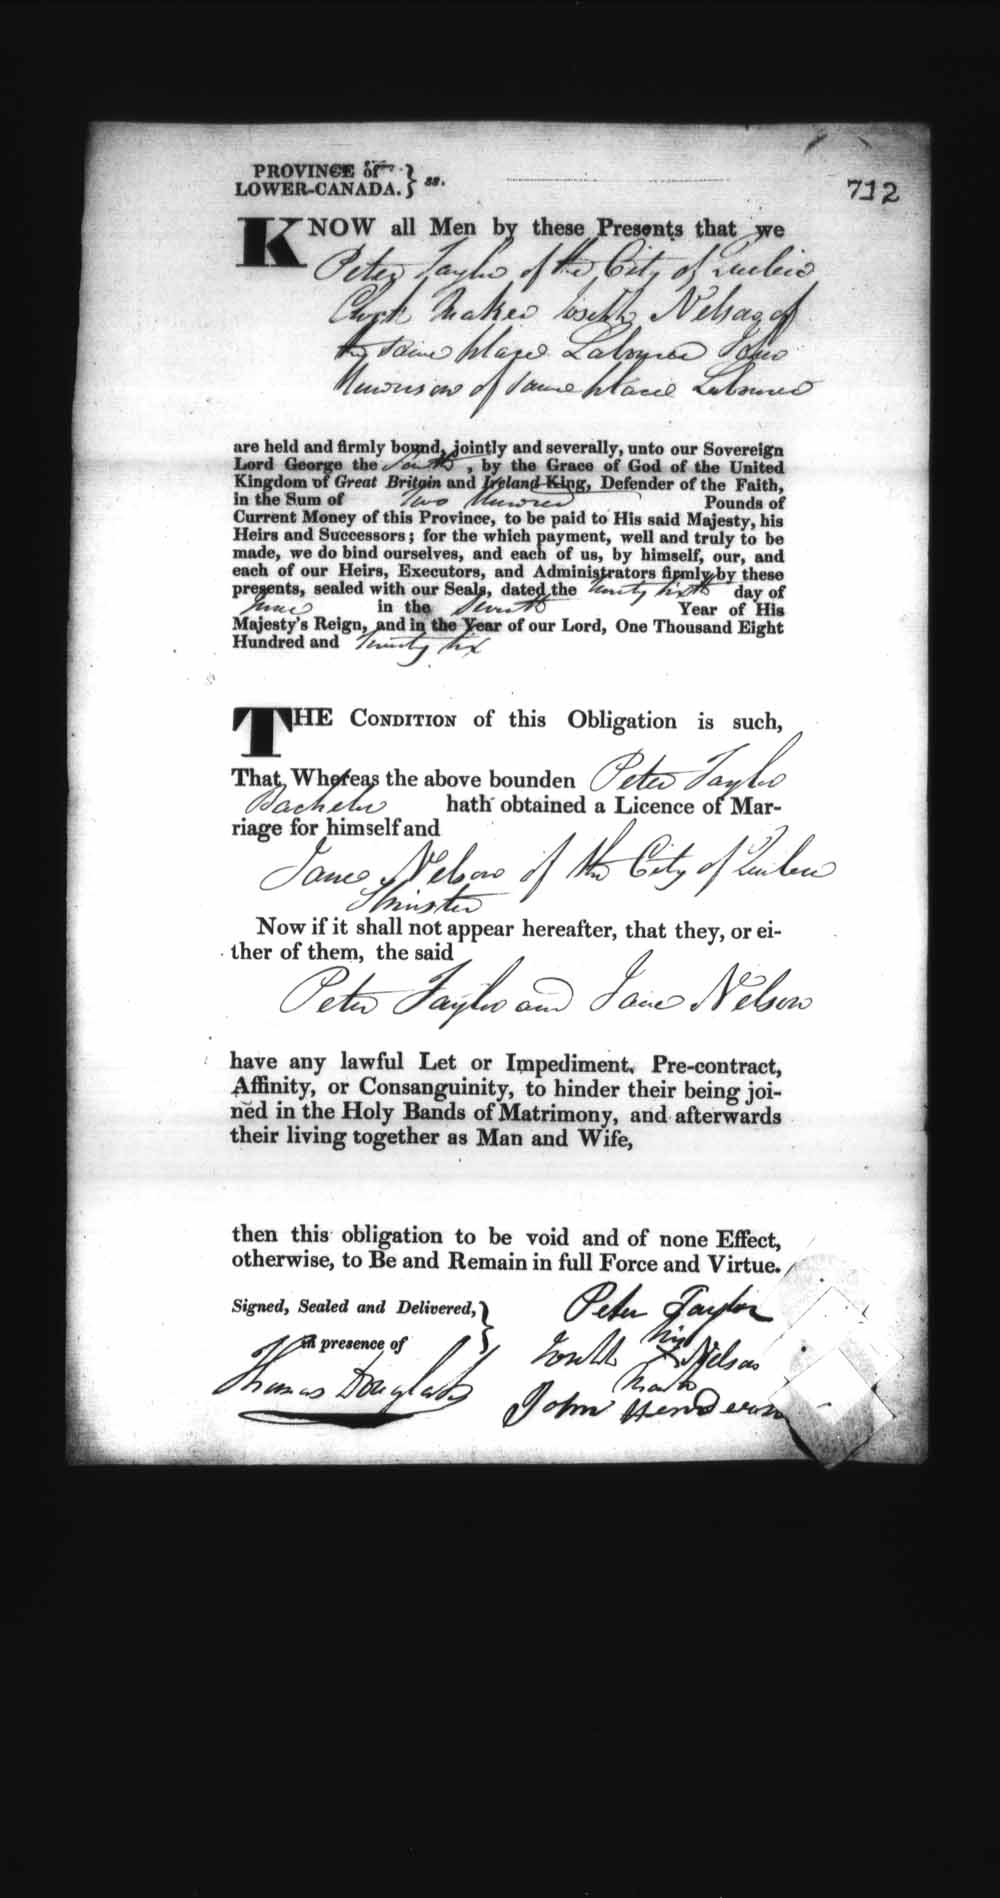 Page numérisé de Cautionnements de mariages pour le Haut-Canada et le Bas-Canada (1779-1865) pour l'image numéro: e008236767